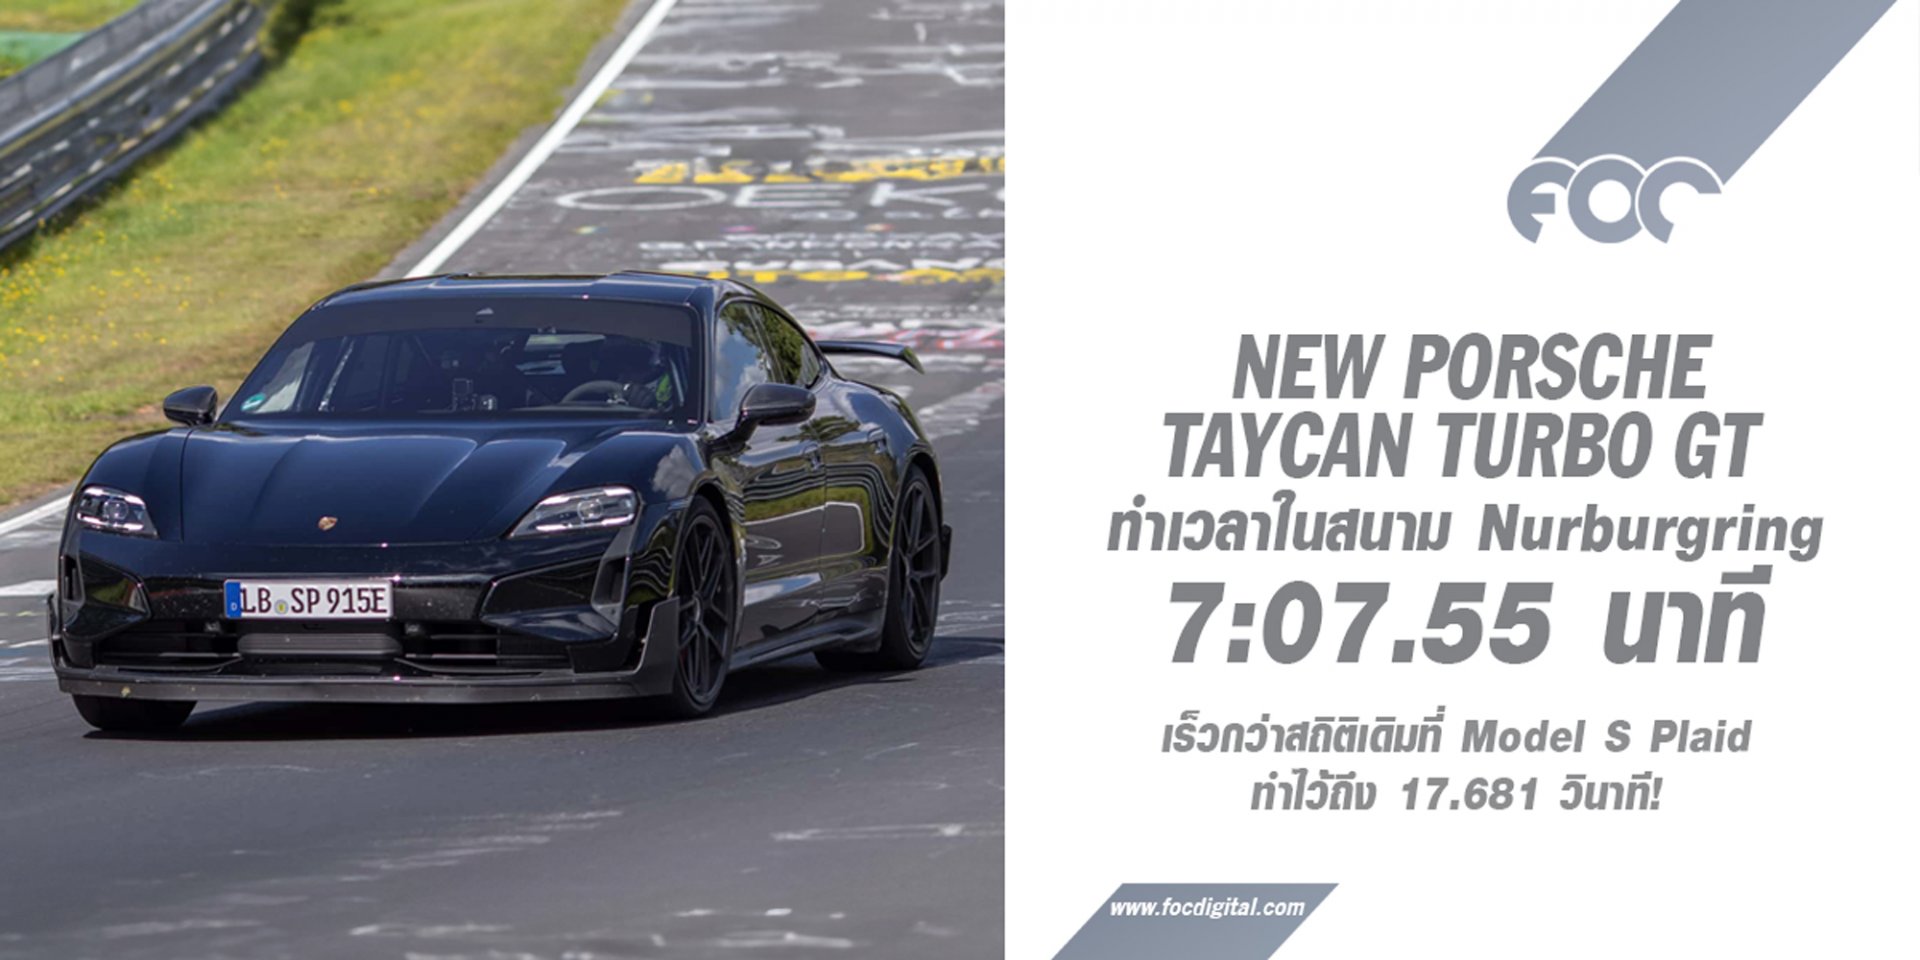 “ได้เวลาขอคืน” New Porsche Taycan Turbo GT สวนกลับ Tesla Model S Plaid ทุบเวลาที่สนาม Nurburgring ไปด้วยเวลา 7:07.55 นาที!!